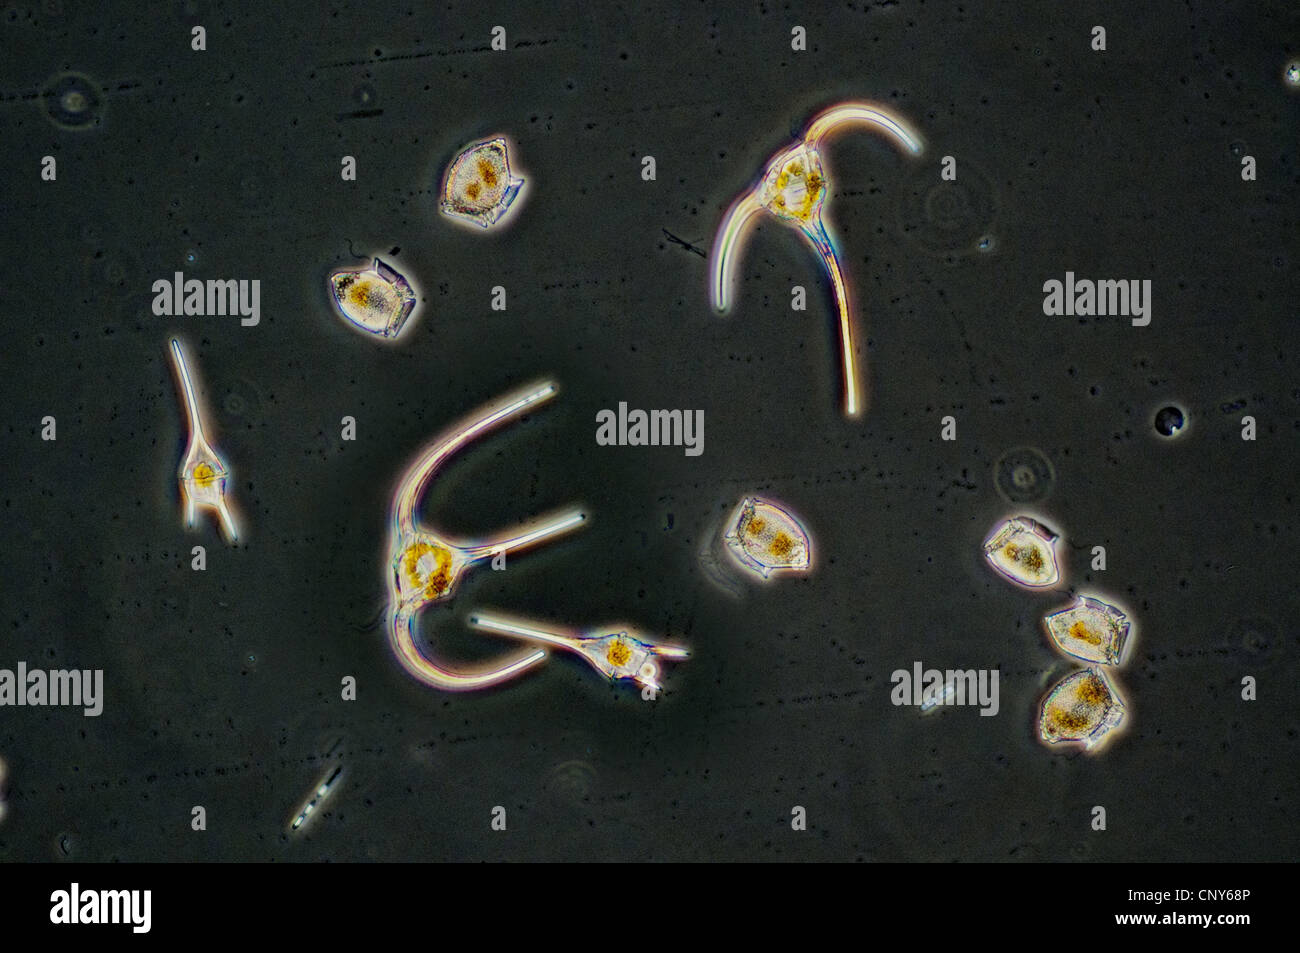 Dinoflagellates dai generi Dinophysis e Ceratium visto attraverso un microscopio. Raccolti dalle acque della Norvegia meridionale nei primi giorni di giugno 2010., Norvegia Foto Stock